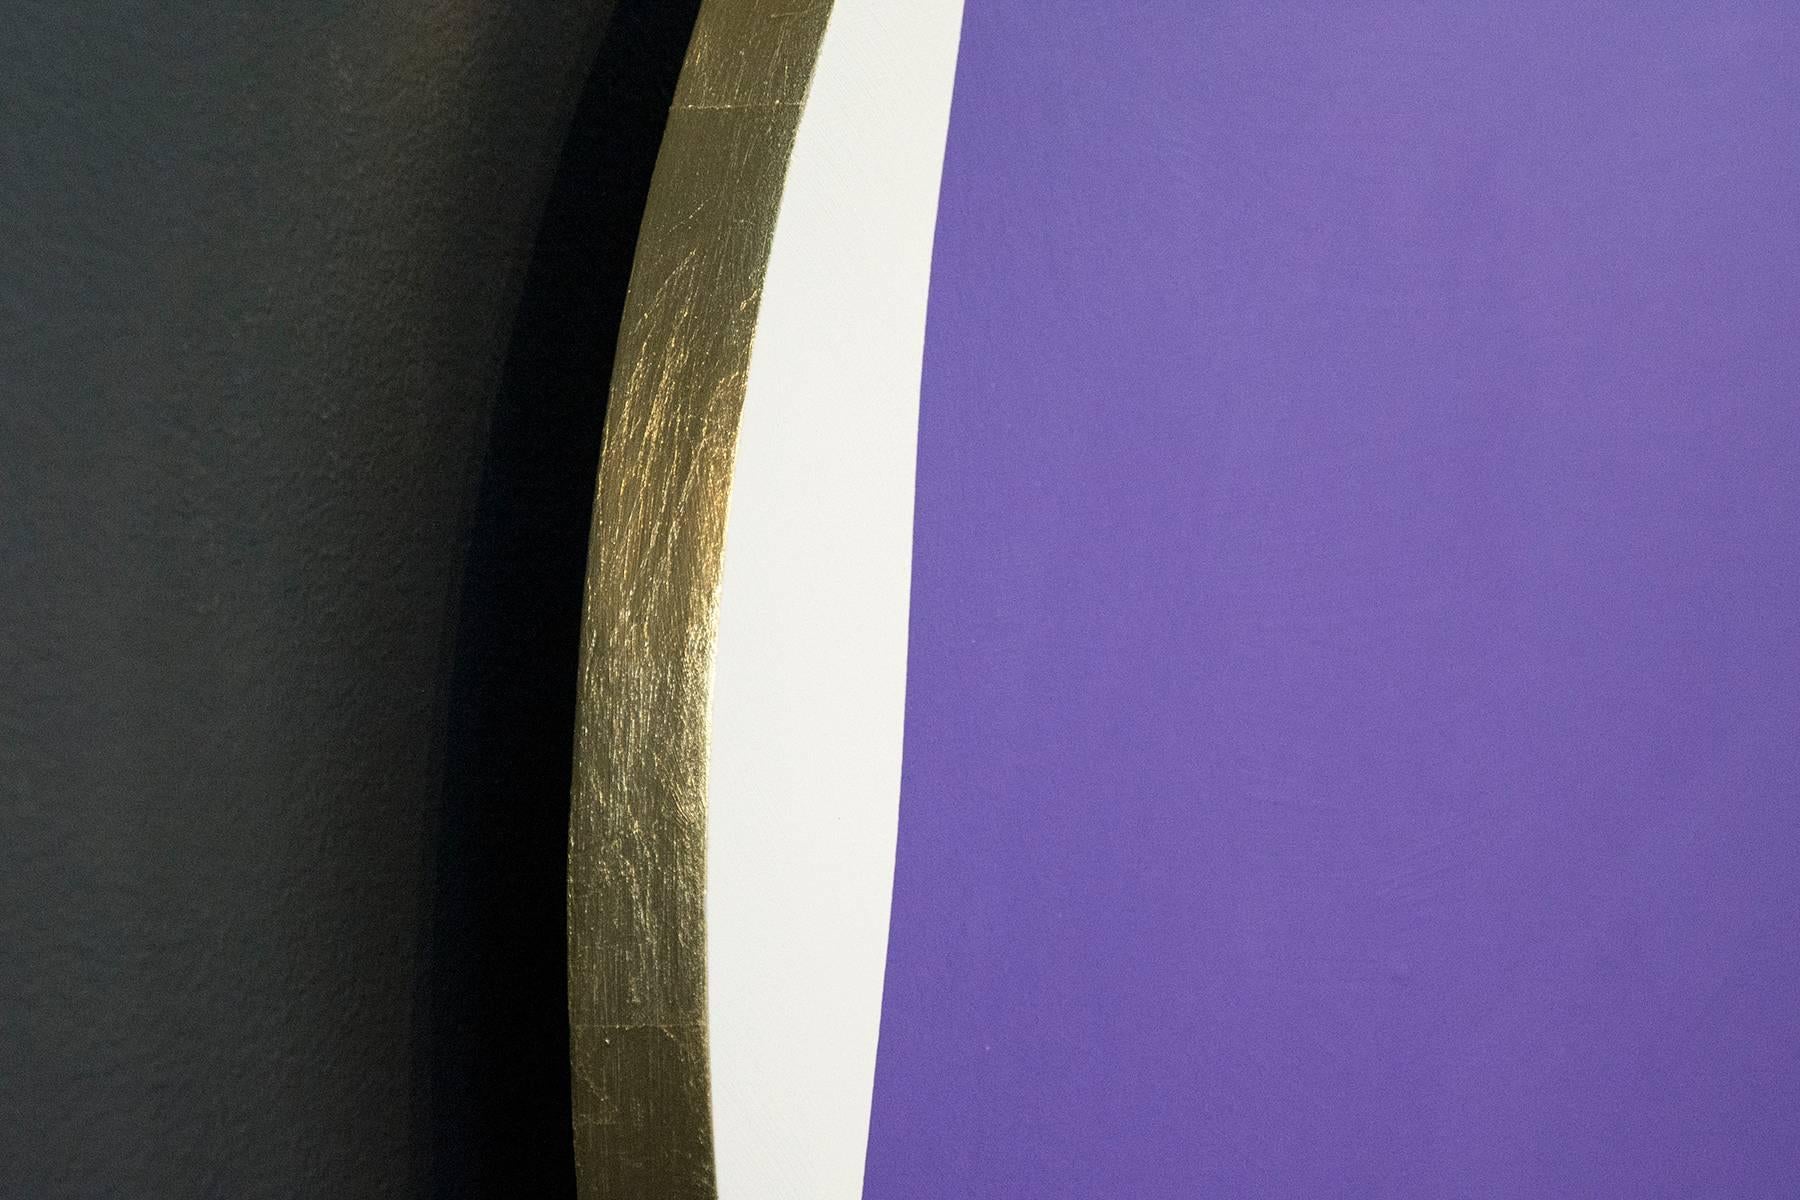 Dans cette œuvre dynamique d'Aron Hill, une forme géométrique d'un violet profond est posée sur un tondo (cercle) blanc.  encadré par une toile noire. Le panneau rond est entouré d'une feuille d'or qui crée un halo autour du tableau. Rappelant